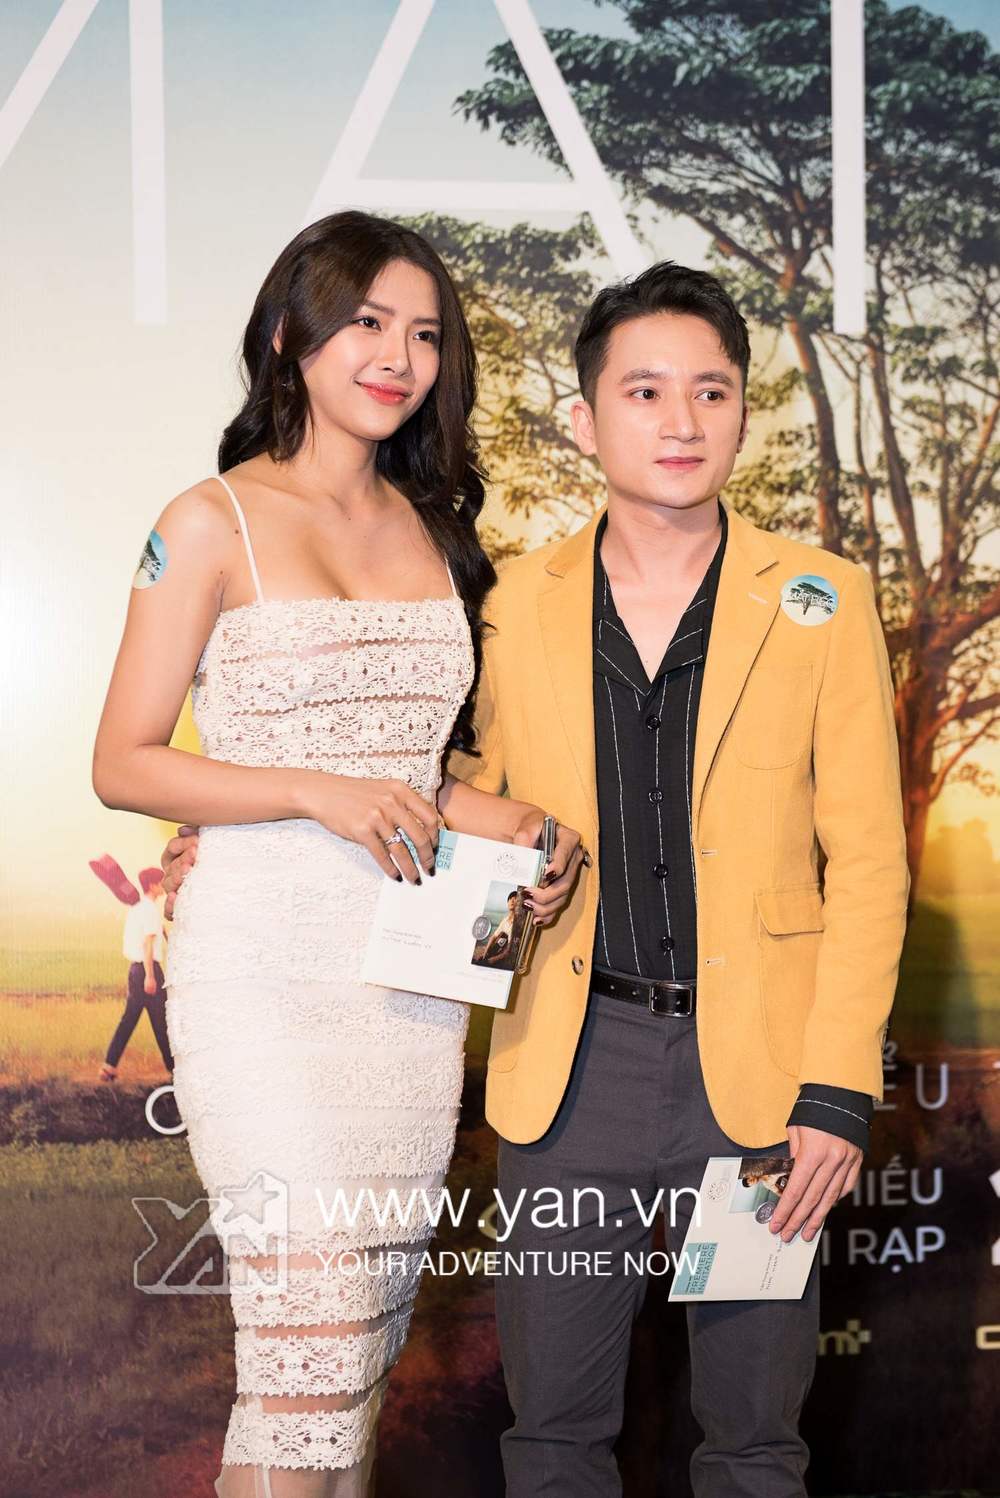  
Phan Mạnh Quỳnh​ đi cùng bạn gái.